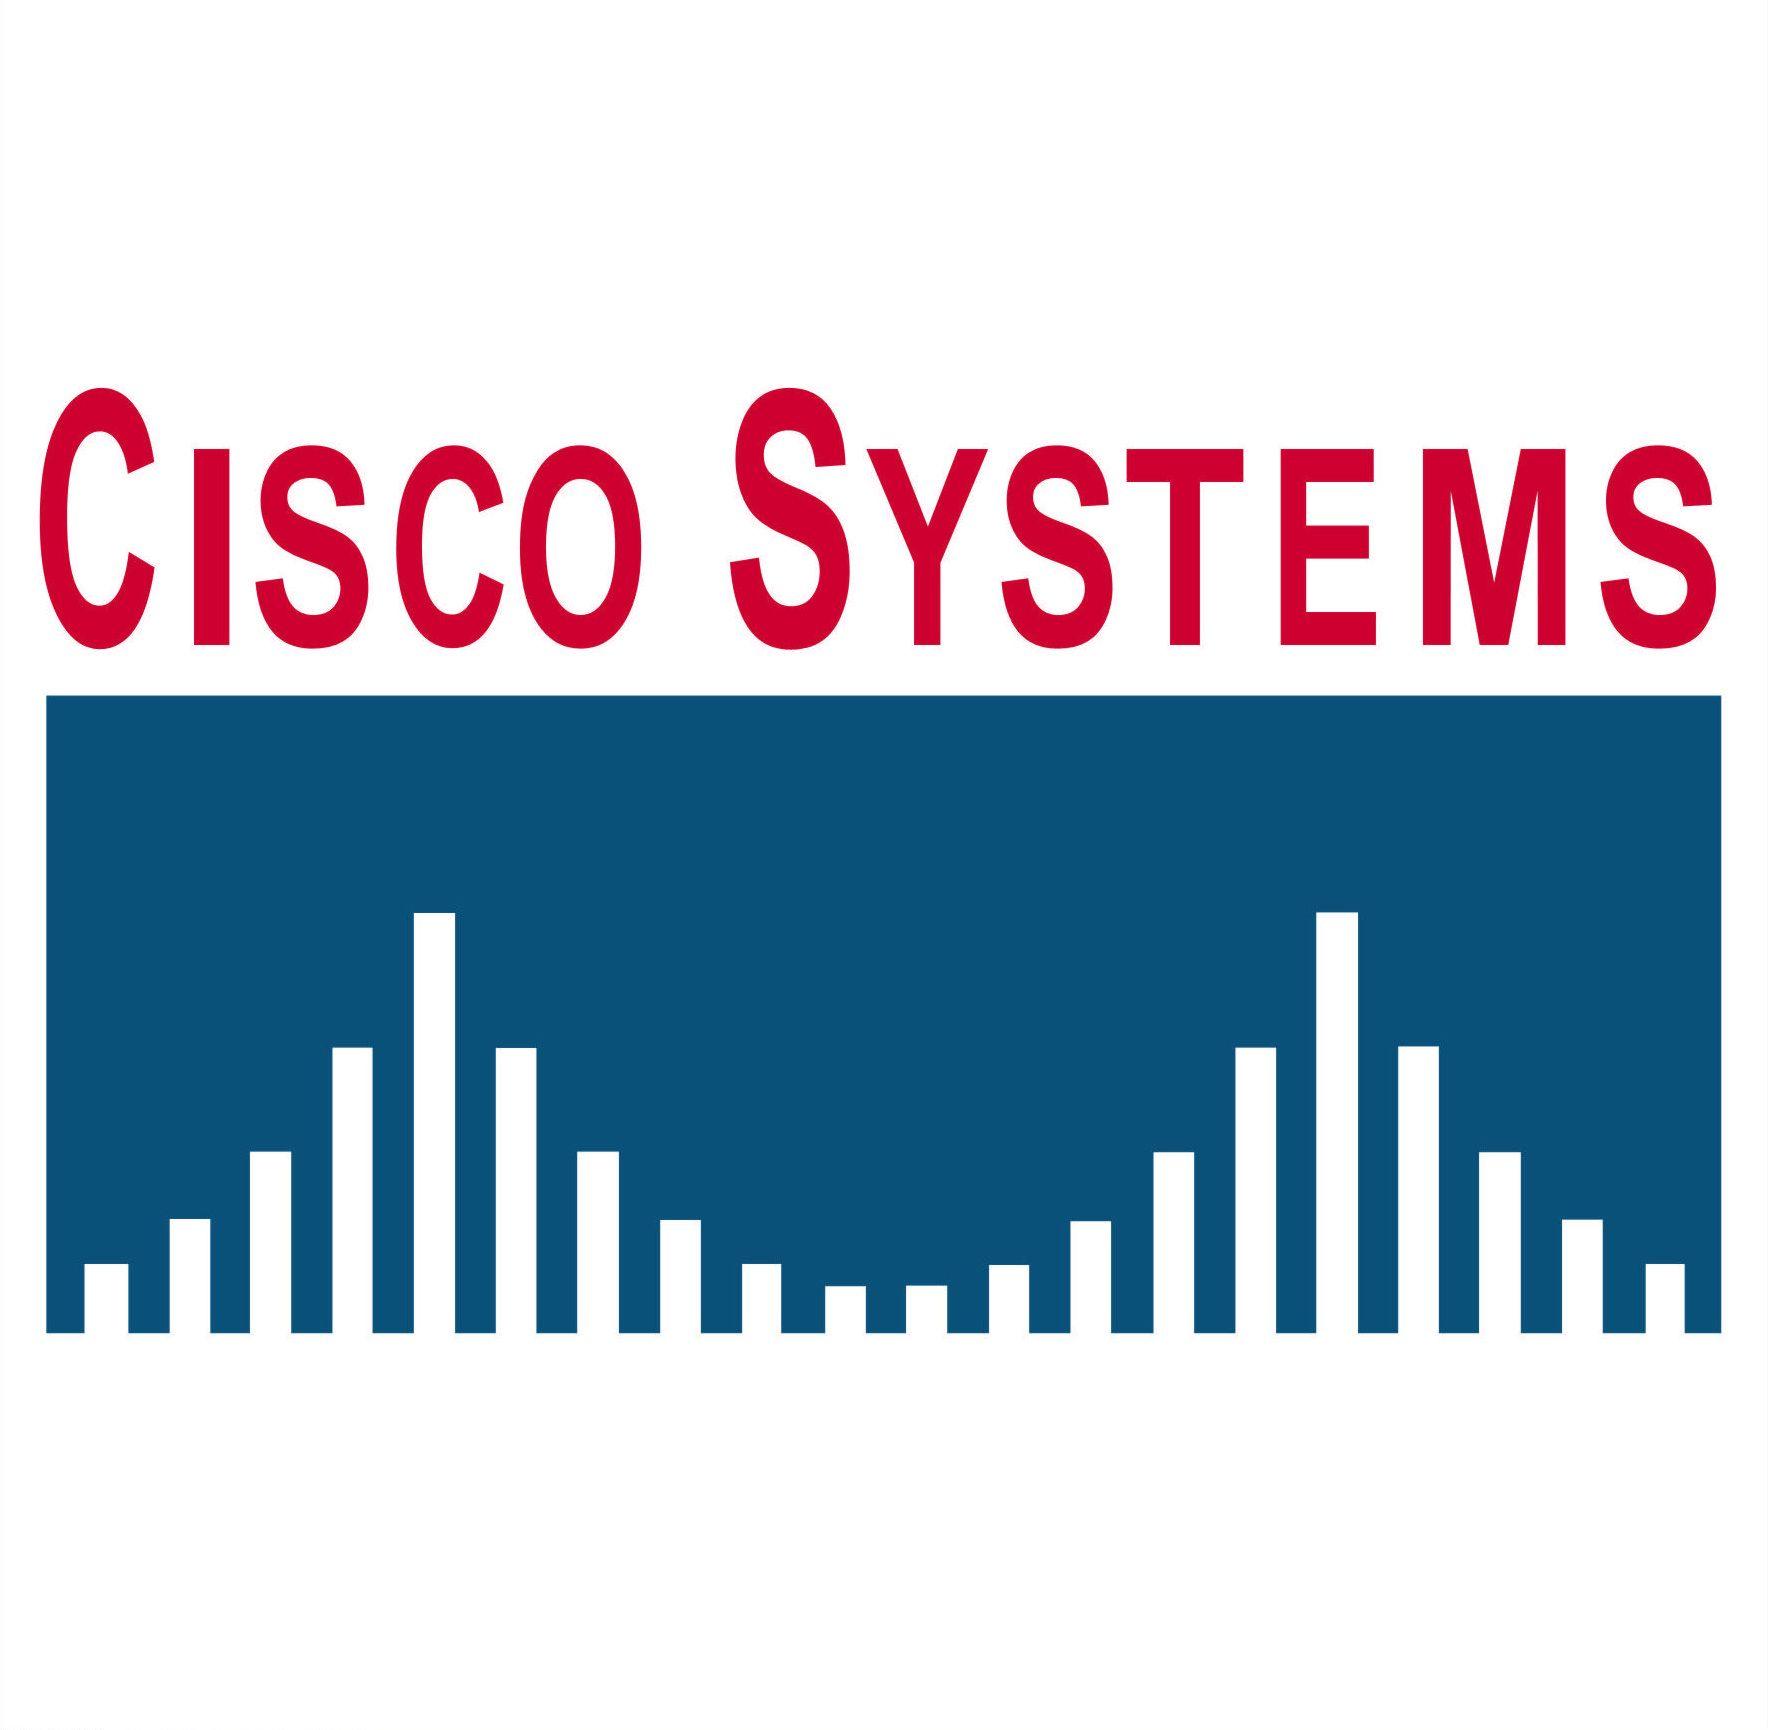 Cisco Systems Logo - Cisco Systems | The New Media Consortium